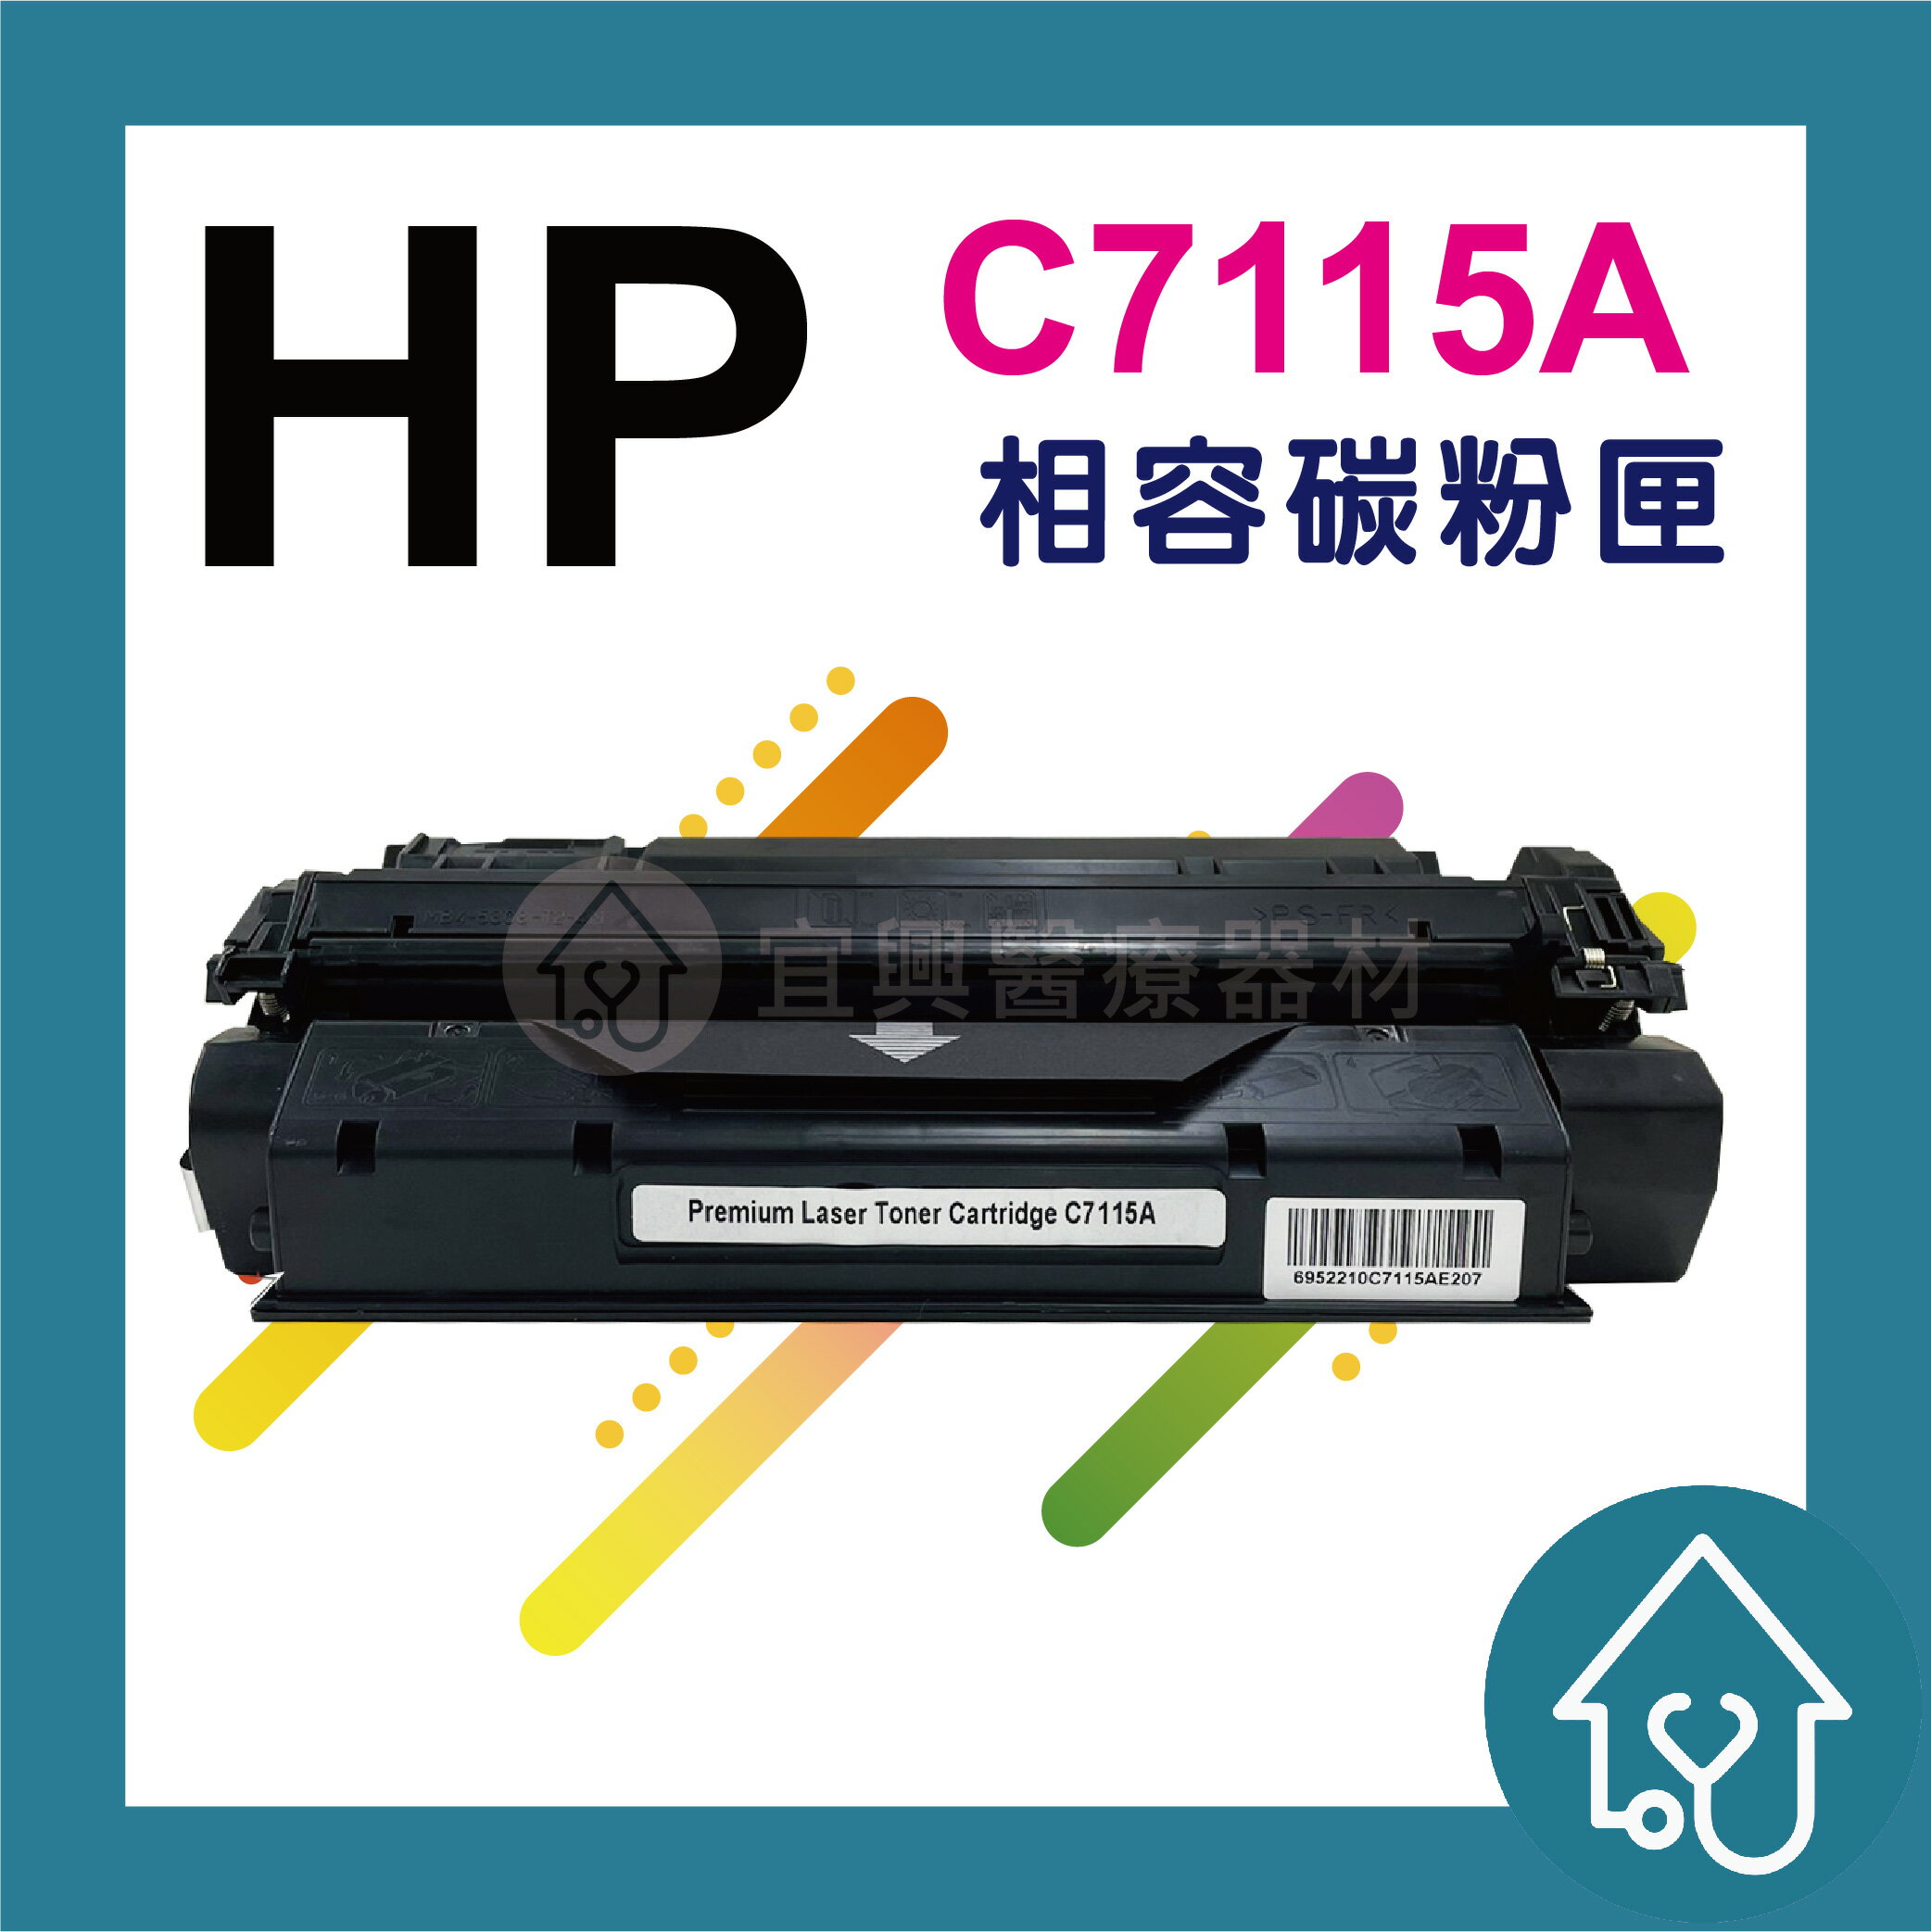 HP C7115A 副廠碳粉匣 環保碳粉匣 HP-1000/1005/3000/1220/3300/3320